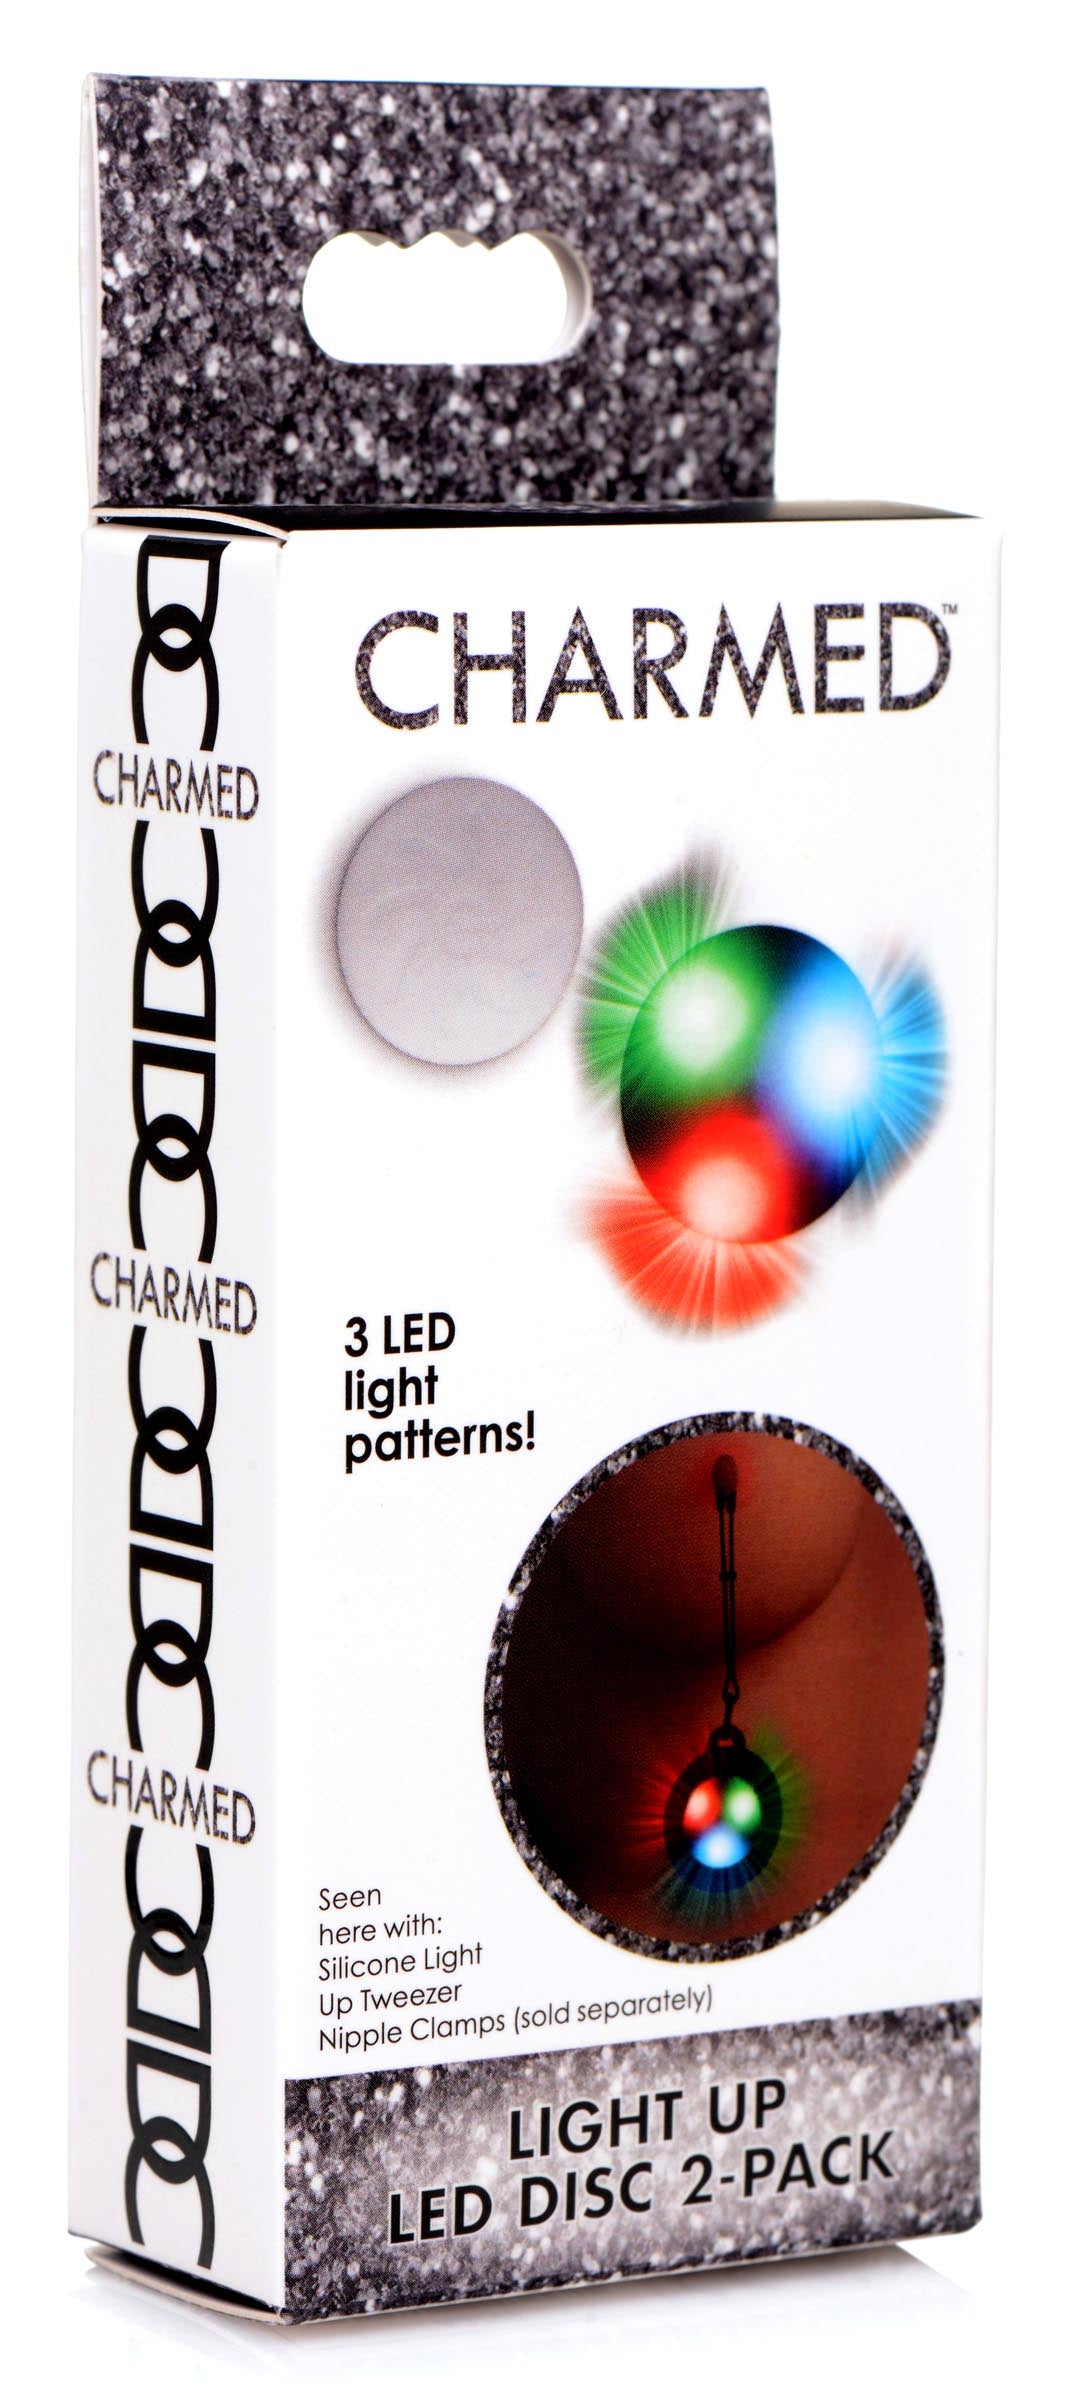 Light Up LED Disc 2-Pack - UABDSM